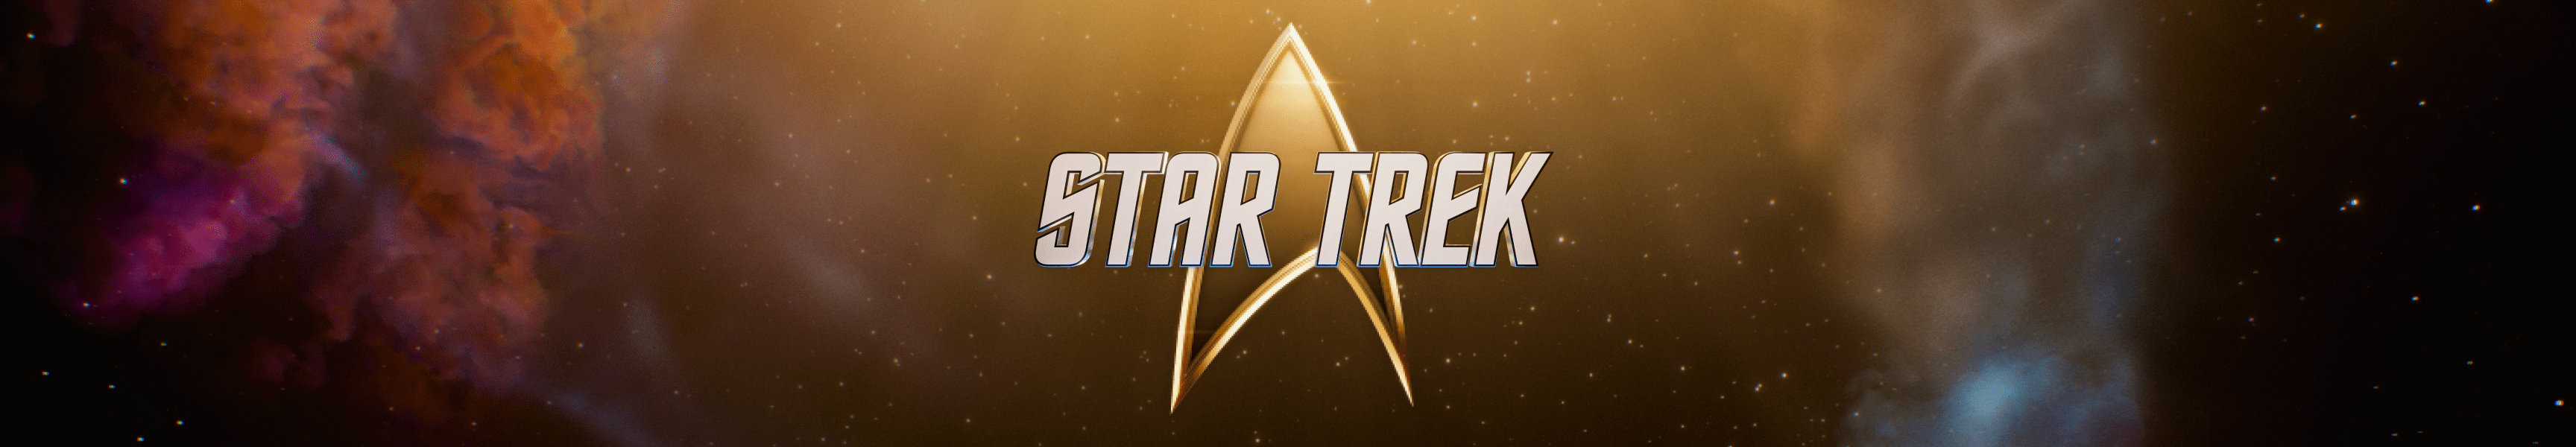 Star Trek Posters